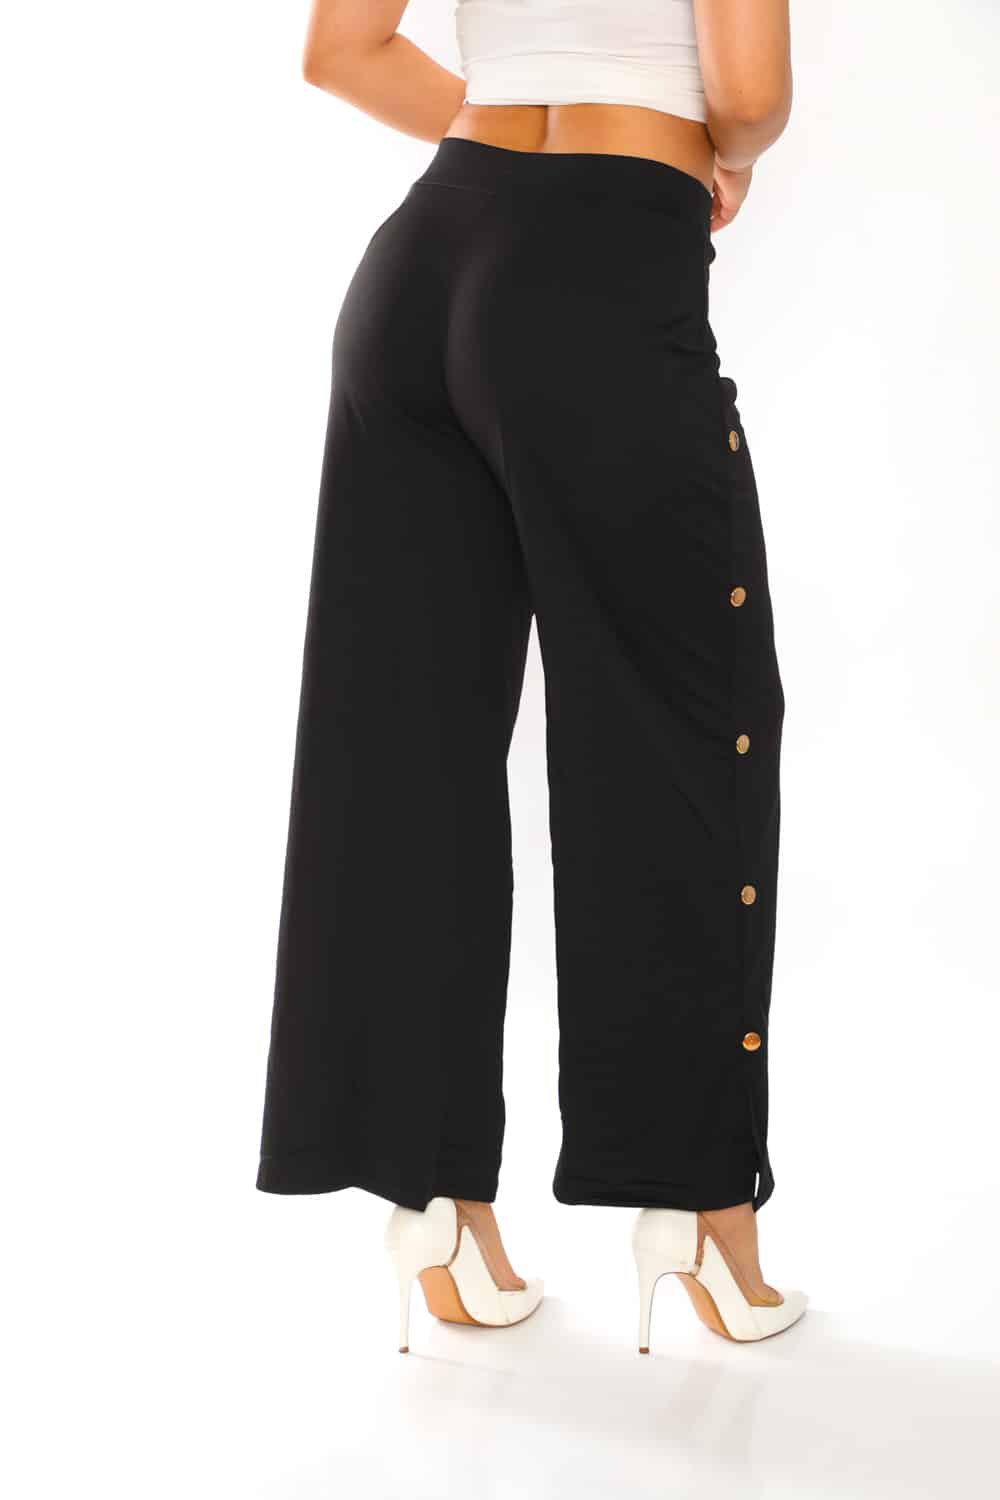 Women's Solid Side Button Trim Pants - 11